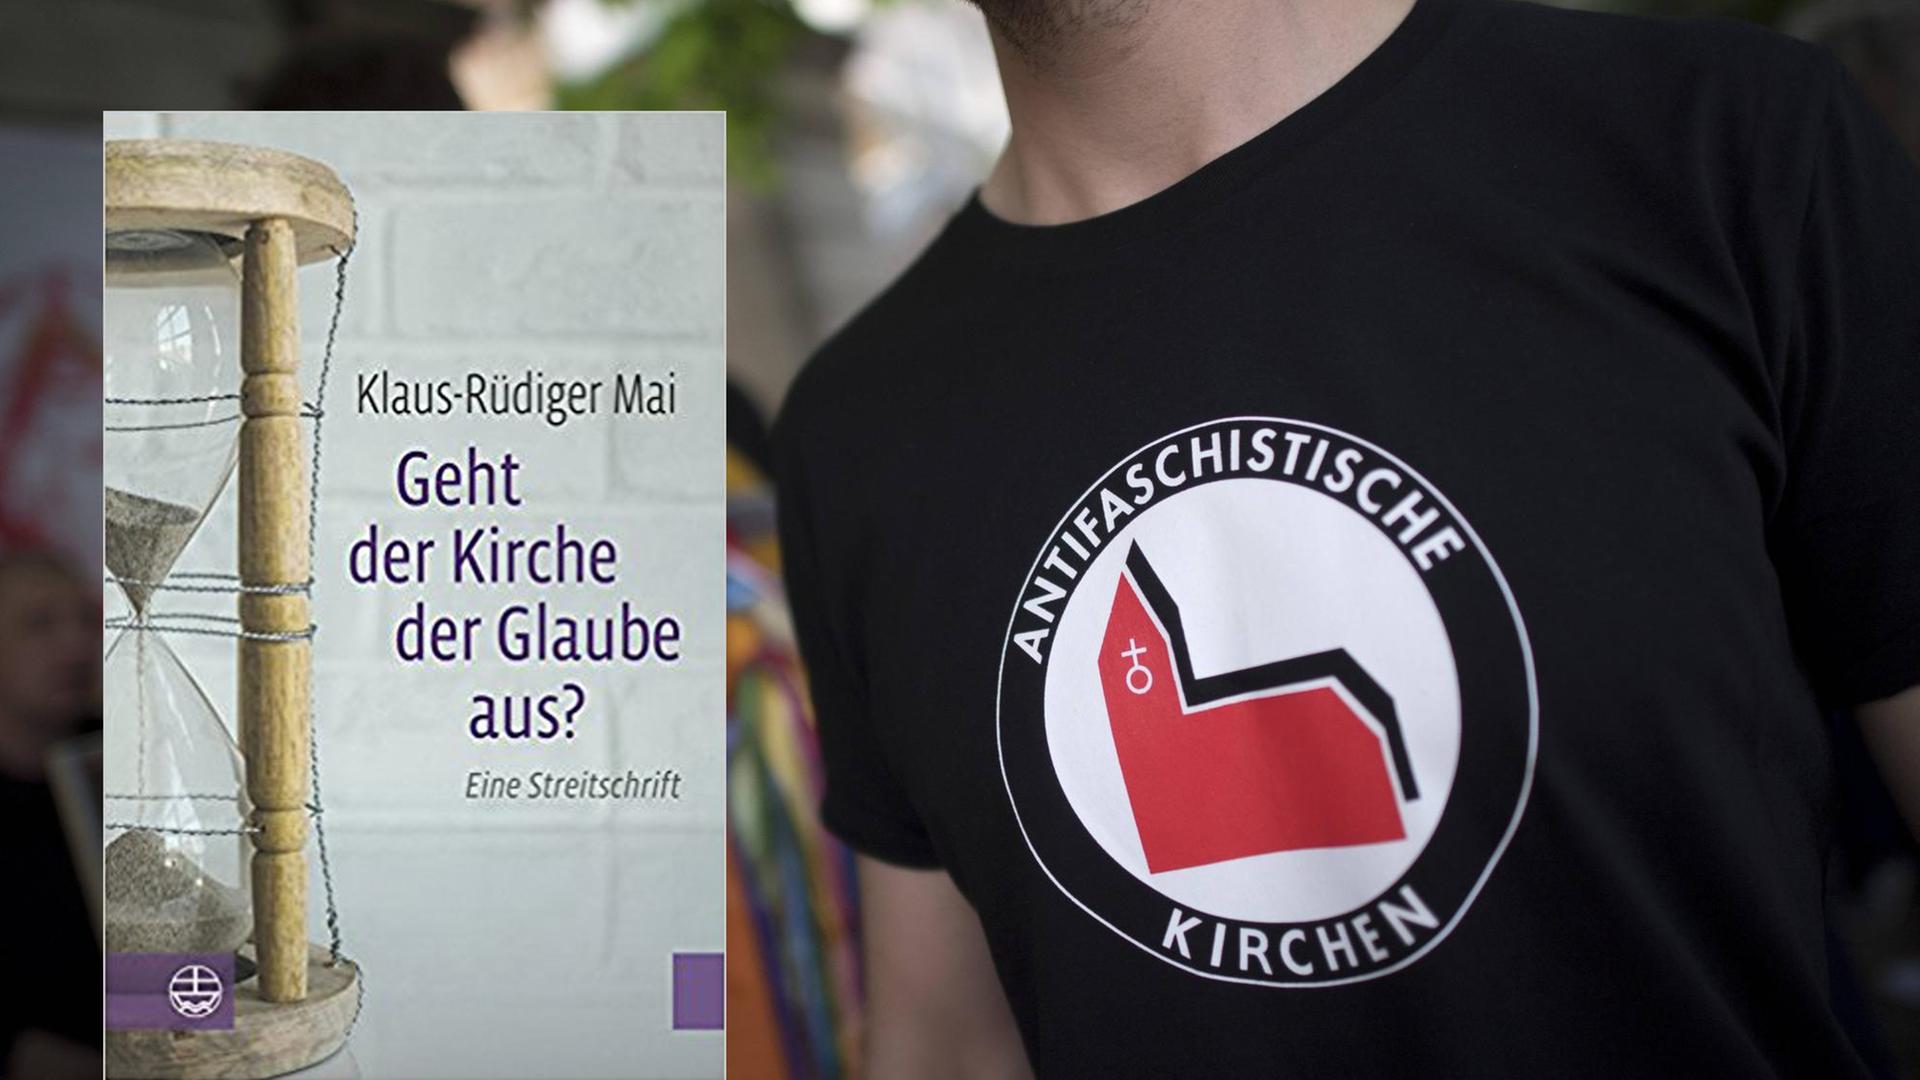 Klaus-Rüdiger Mai meint, die Kirchen seien politisch zu links orientiert.